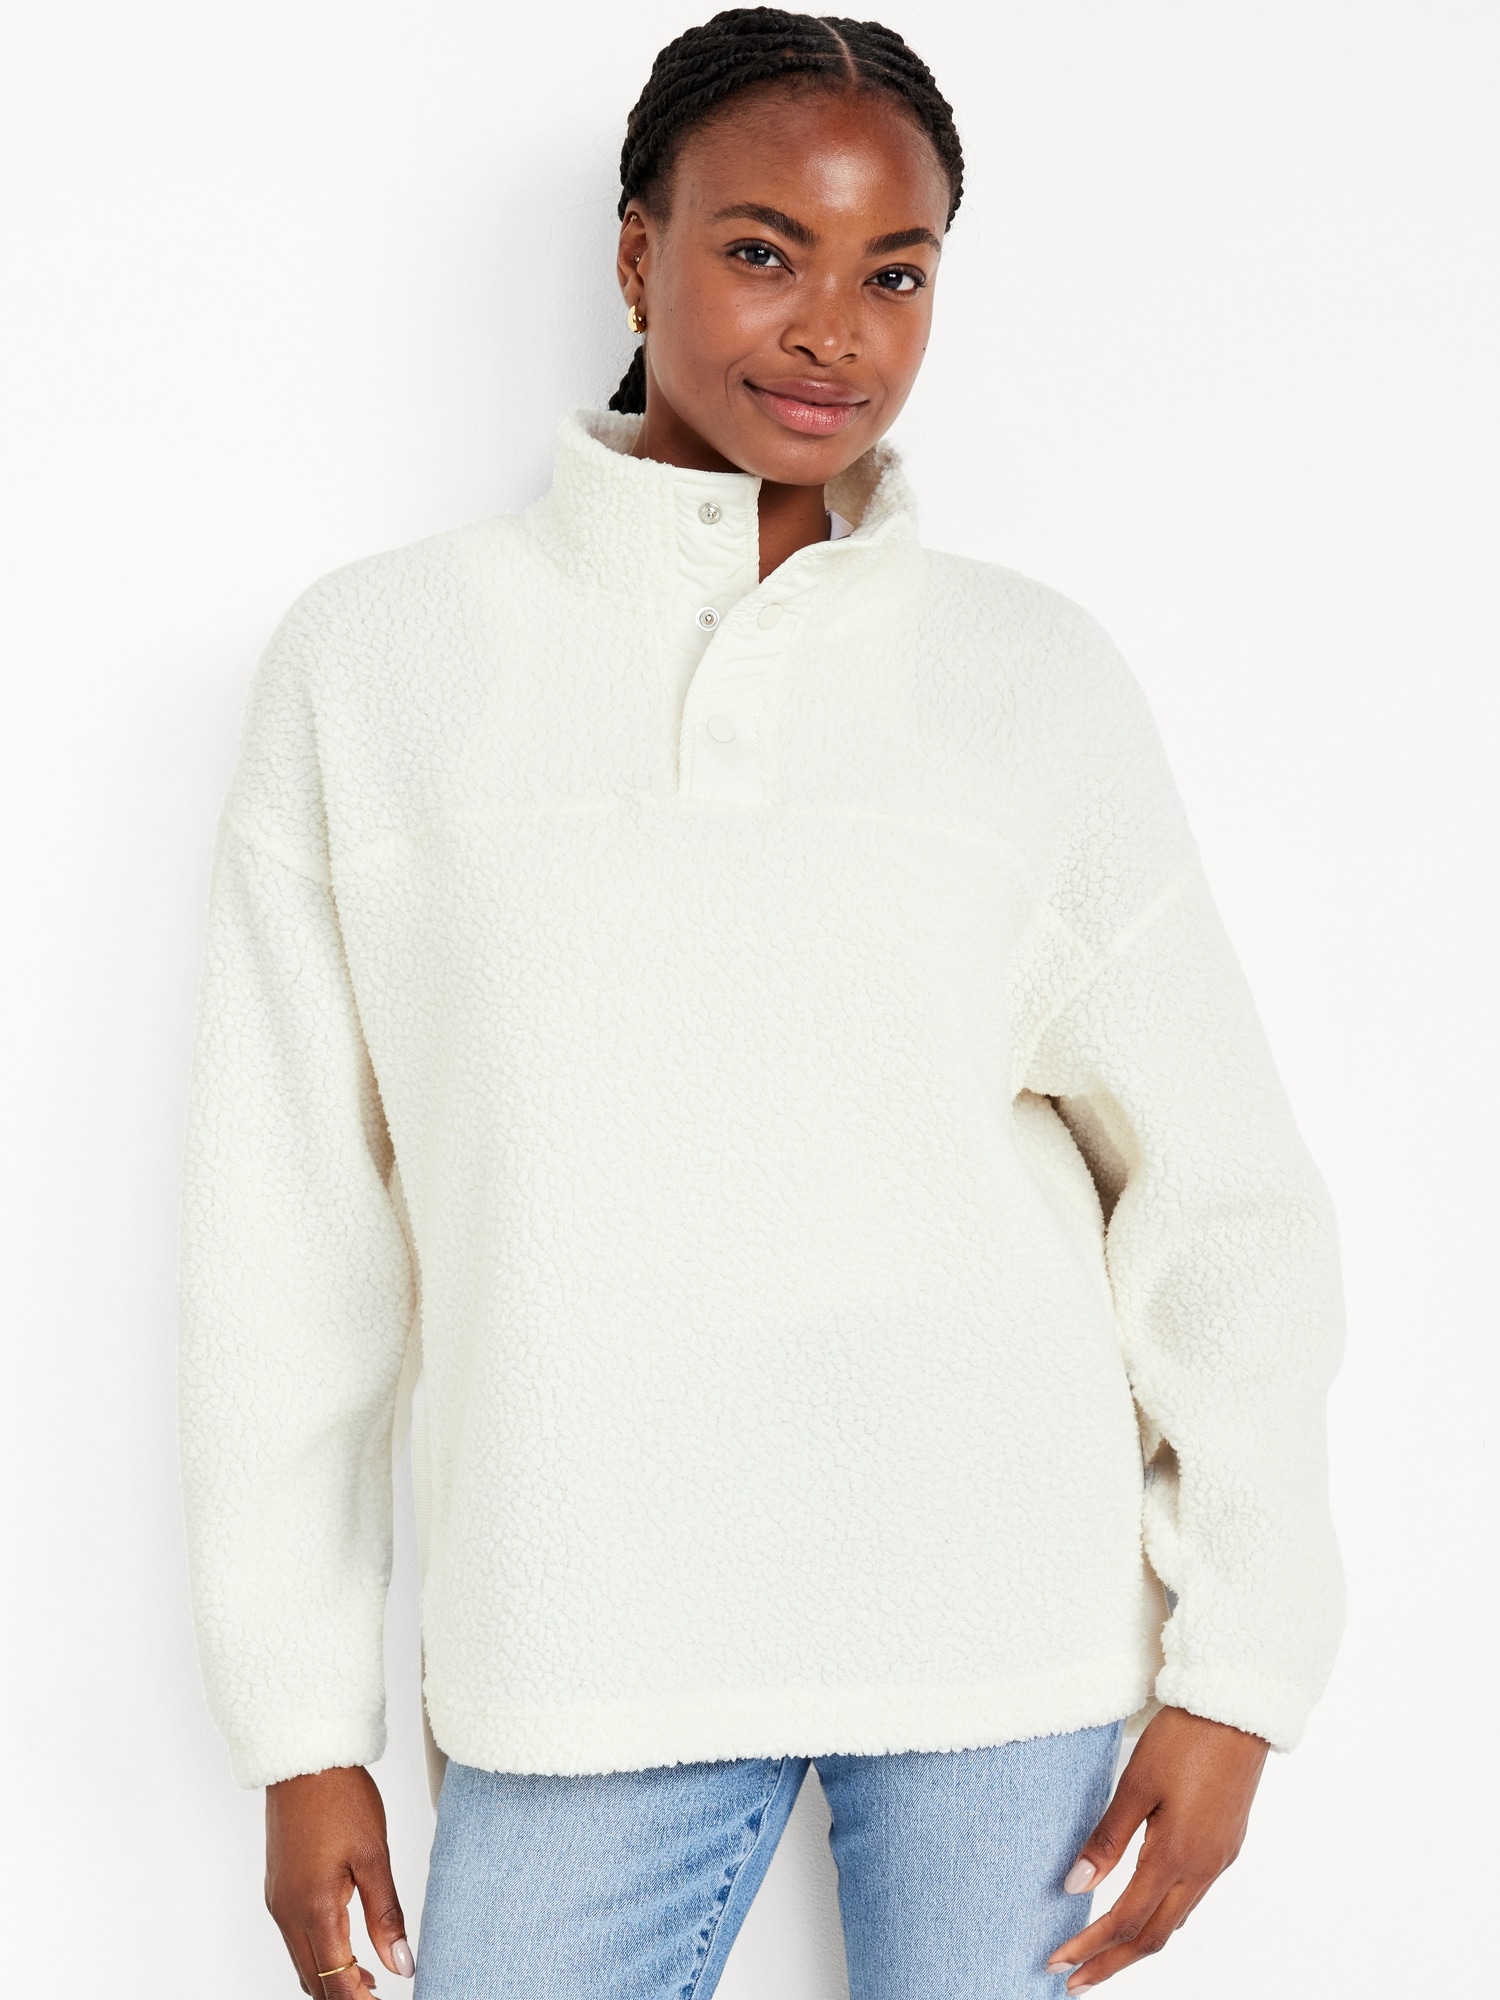 Tunic Sweaters